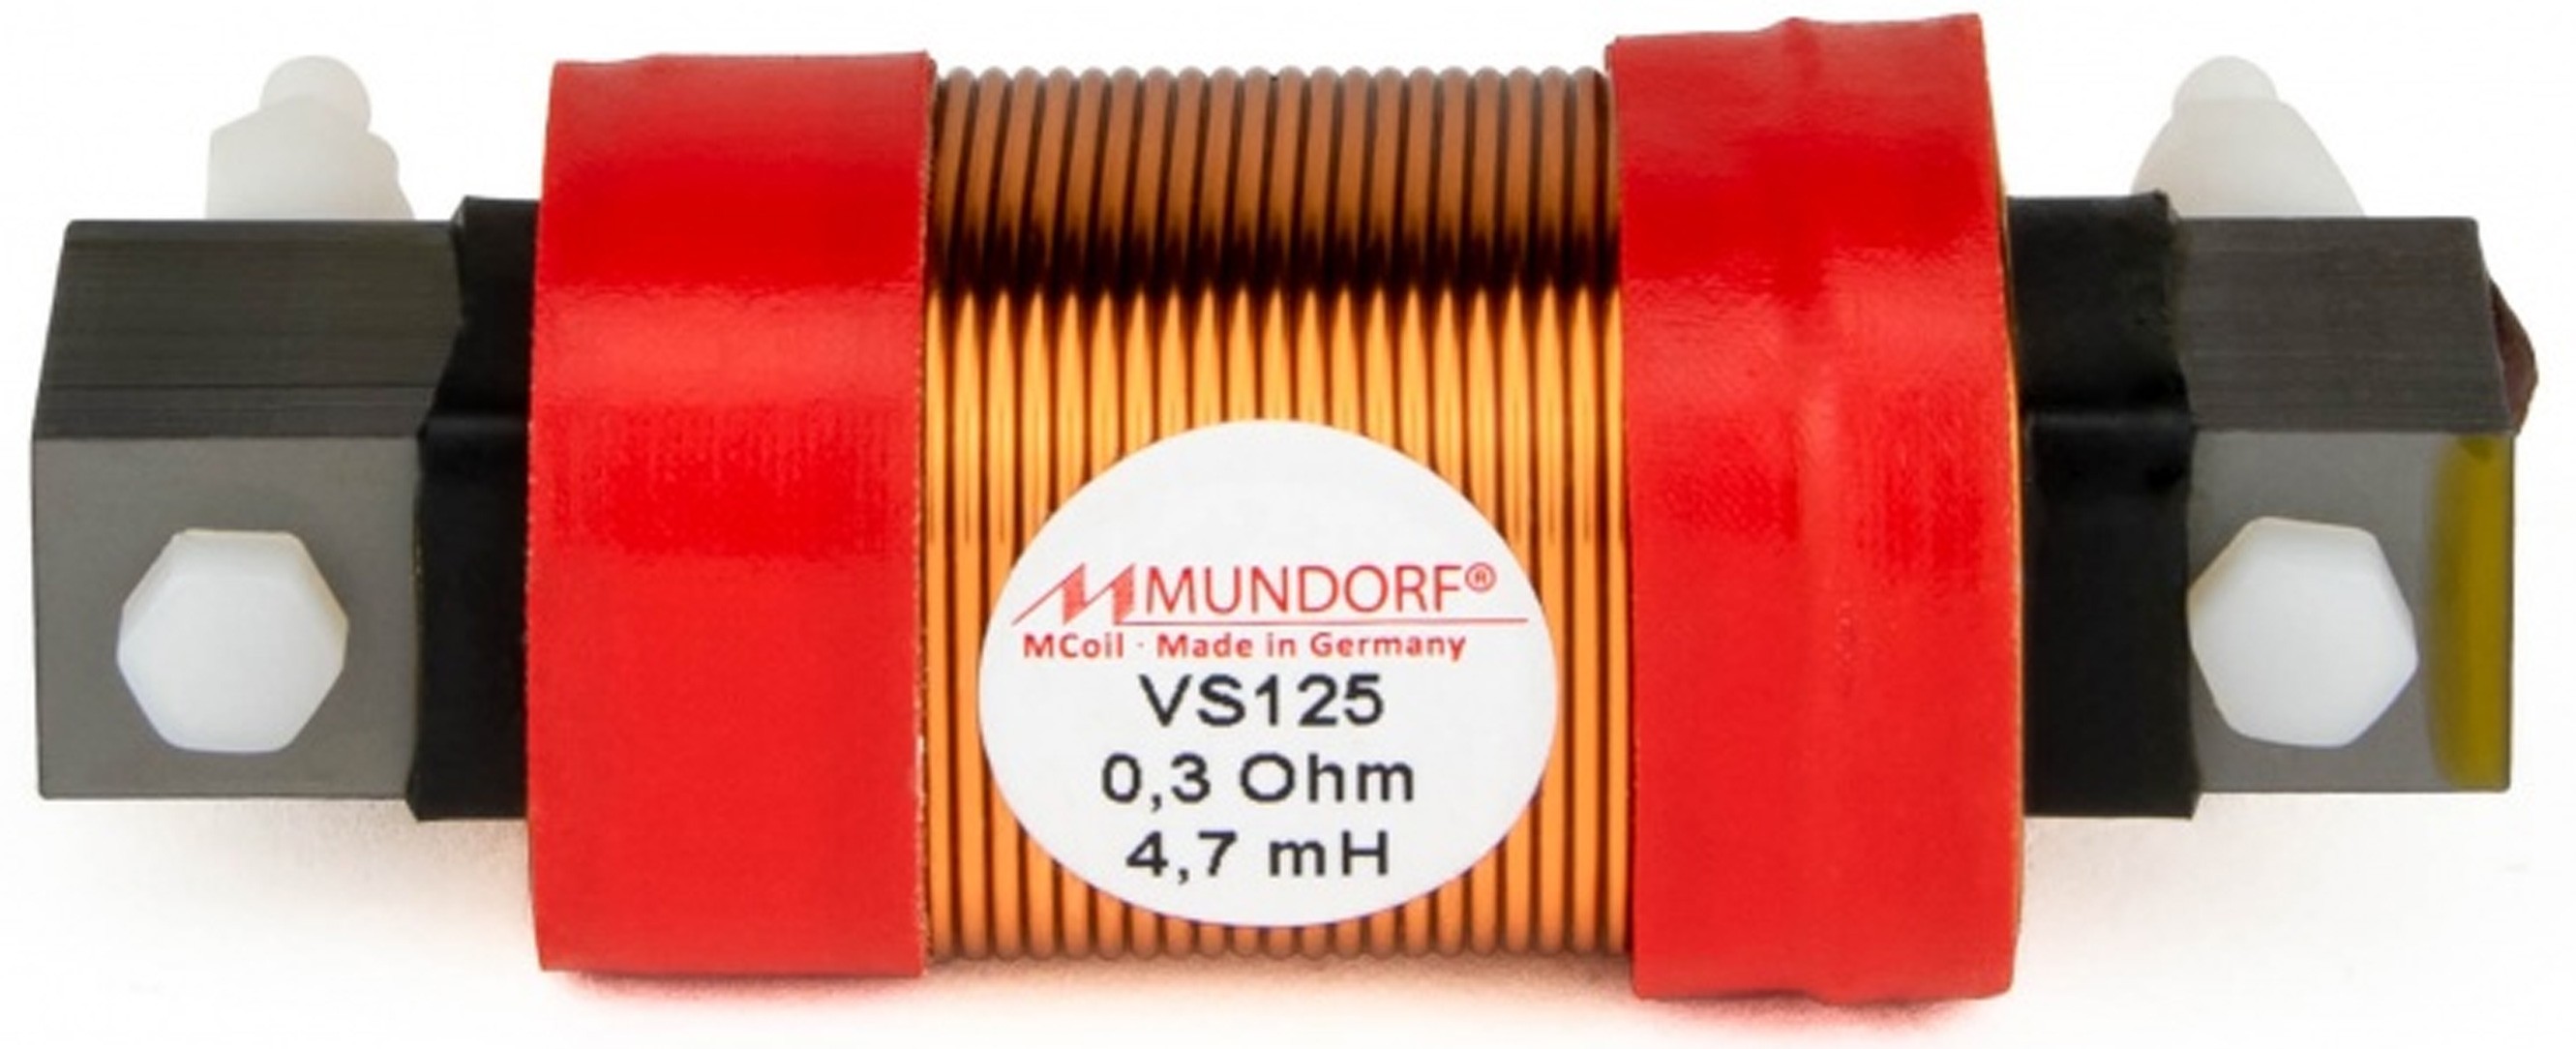 MUNDORF VS125-18 MCOIL ICORE Copper Coil Feron Core 18mH